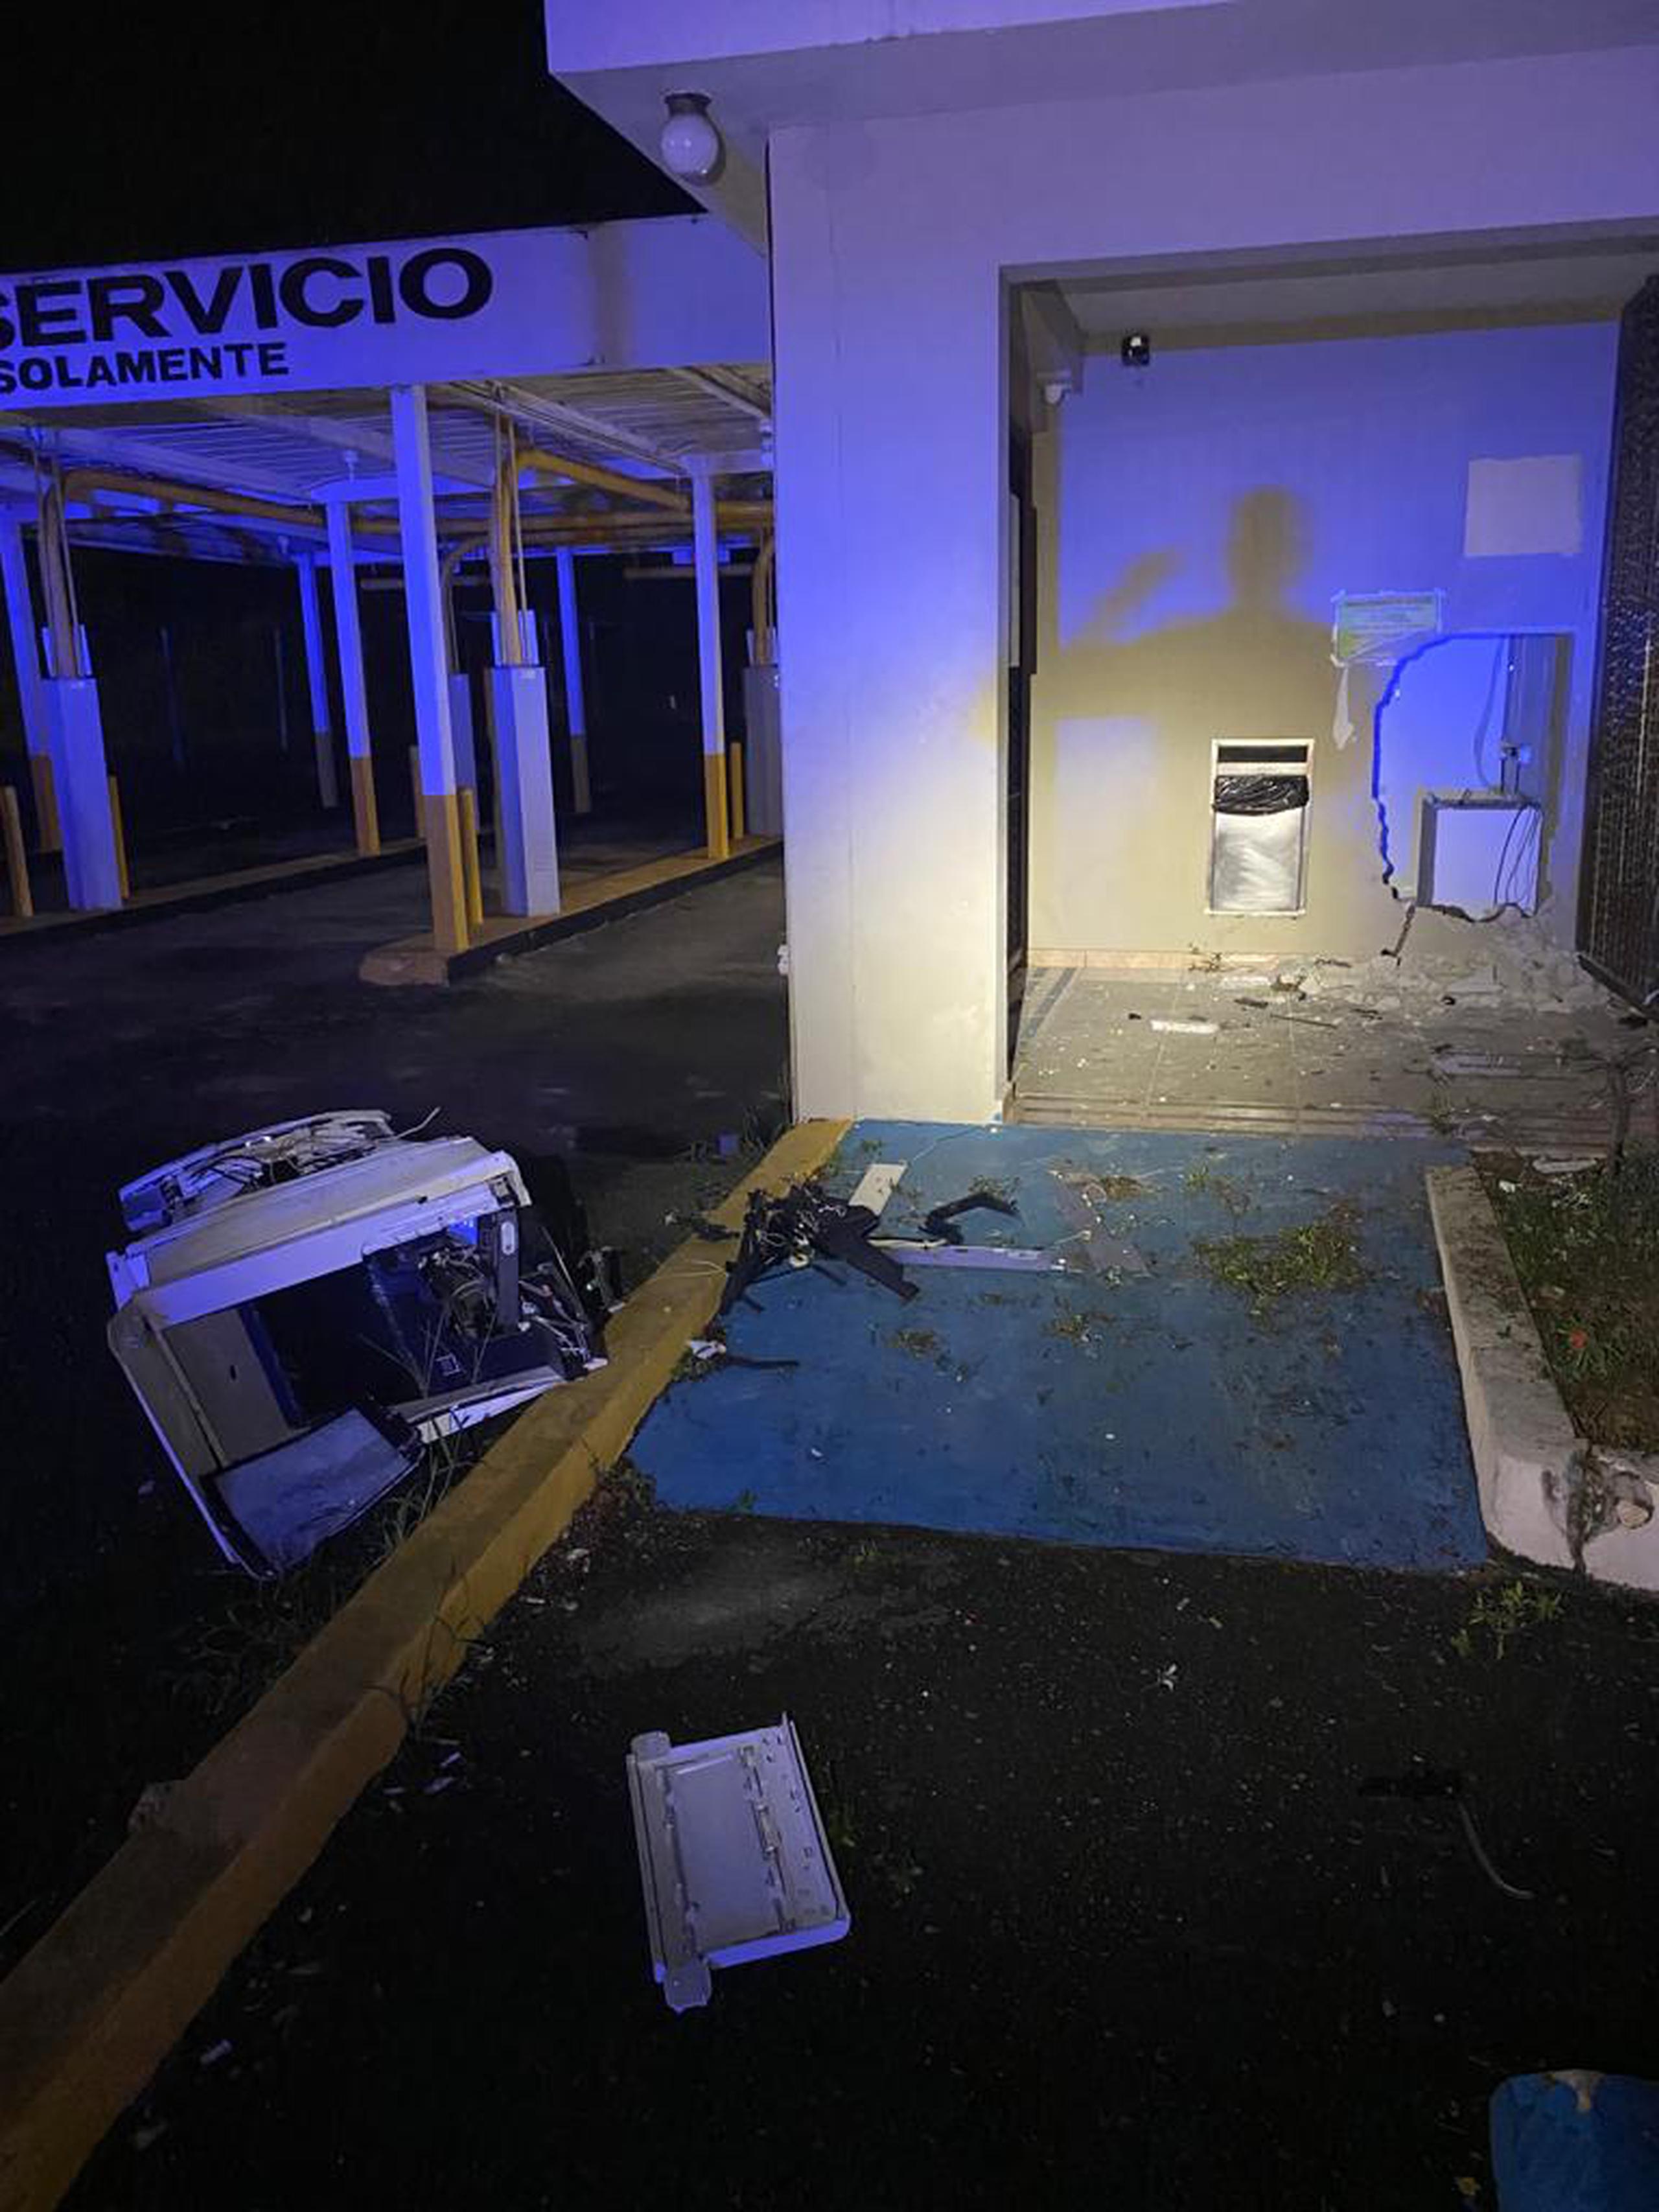 La ATM fue arrancada de la pared de la sucursal de la cooperativa Ciales Coop, localizada en el kilómetro 8.4 de la carretera PR-149, en Manatí.